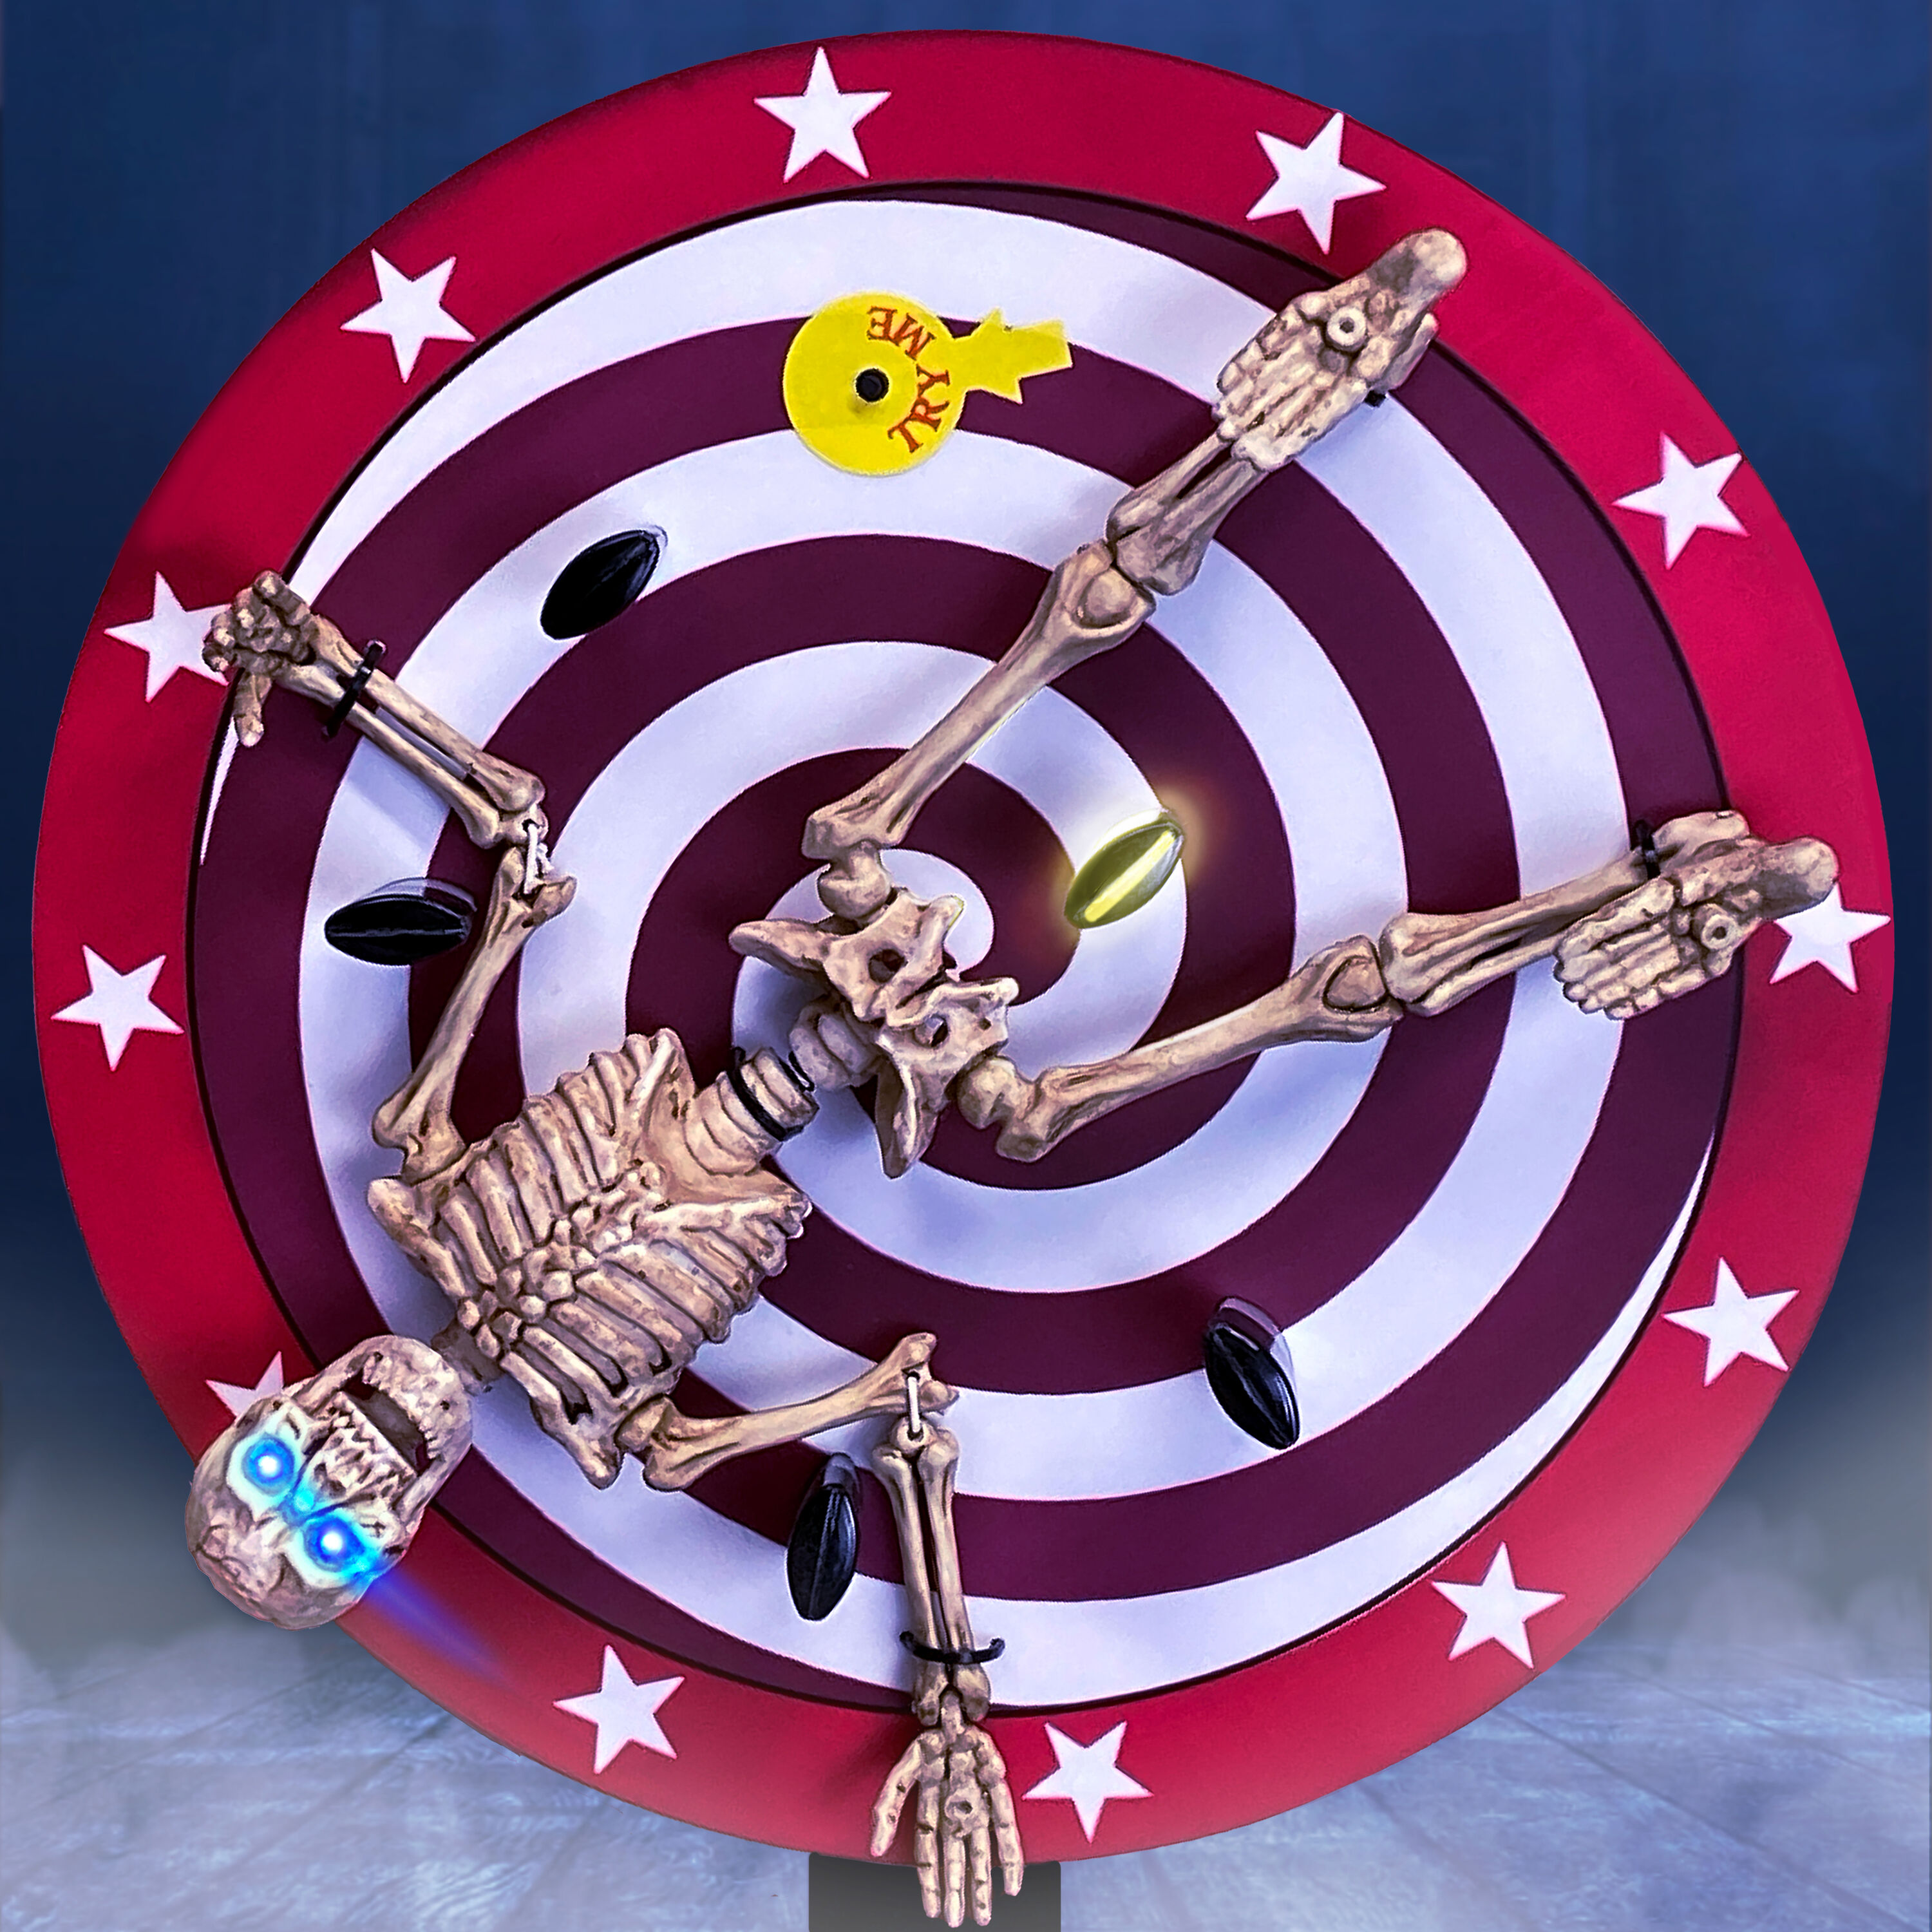 Grateful Dead Action Figure Release: $12 Uncle Sam Skeleton on